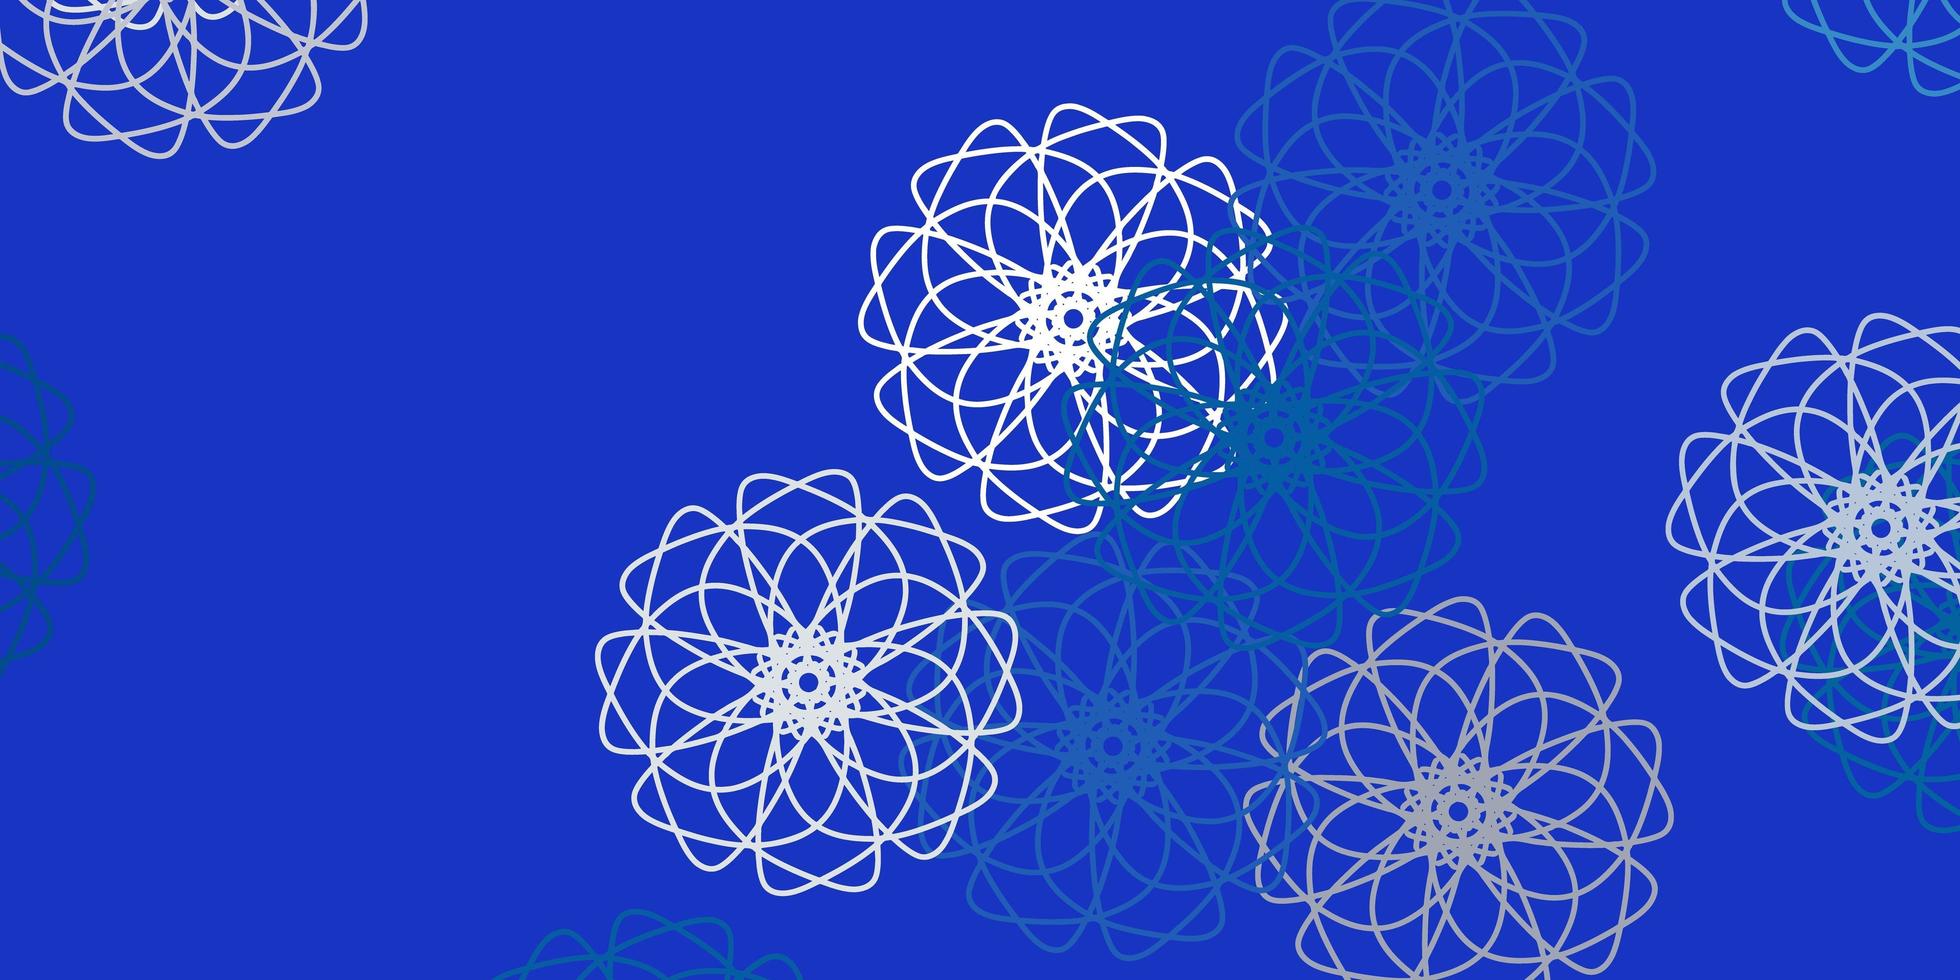 layout naturale vettoriale azzurro con fiori.